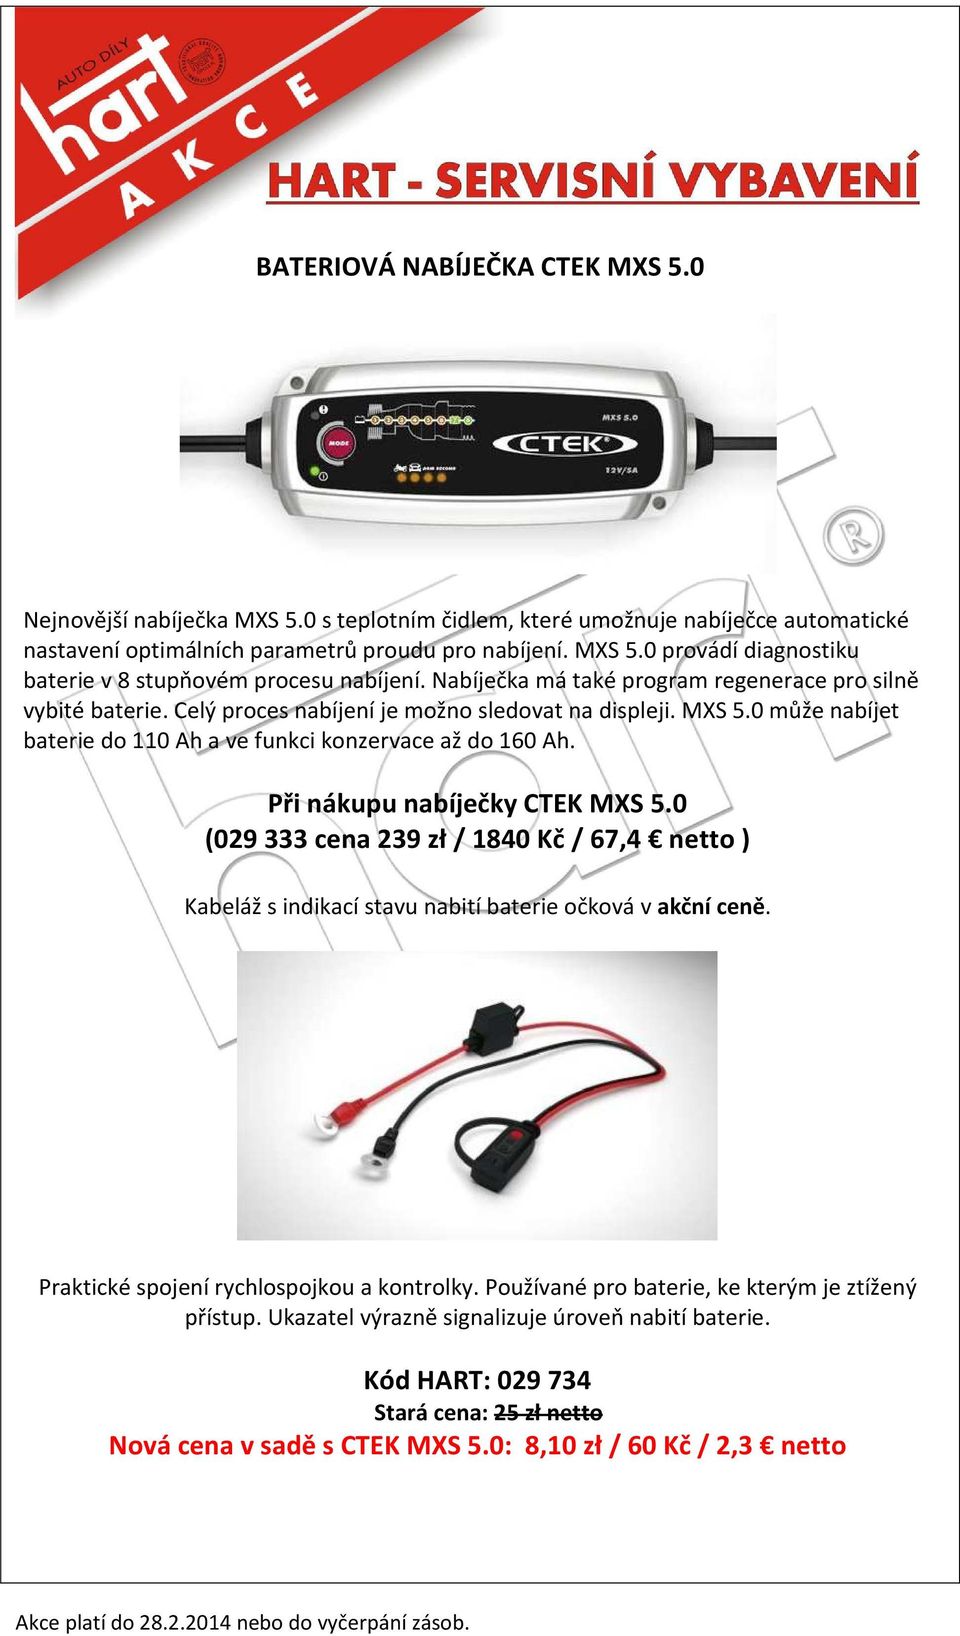 Při nákupu nabíječky CTEK MXS 5.0 (029 333 cena 239 zł / 1840 Kč / 67,4 netto ) Kabeláž s indikací stavu nabití baterie očková v akční ceně. Praktické spojení rychlospojkou a kontrolky.